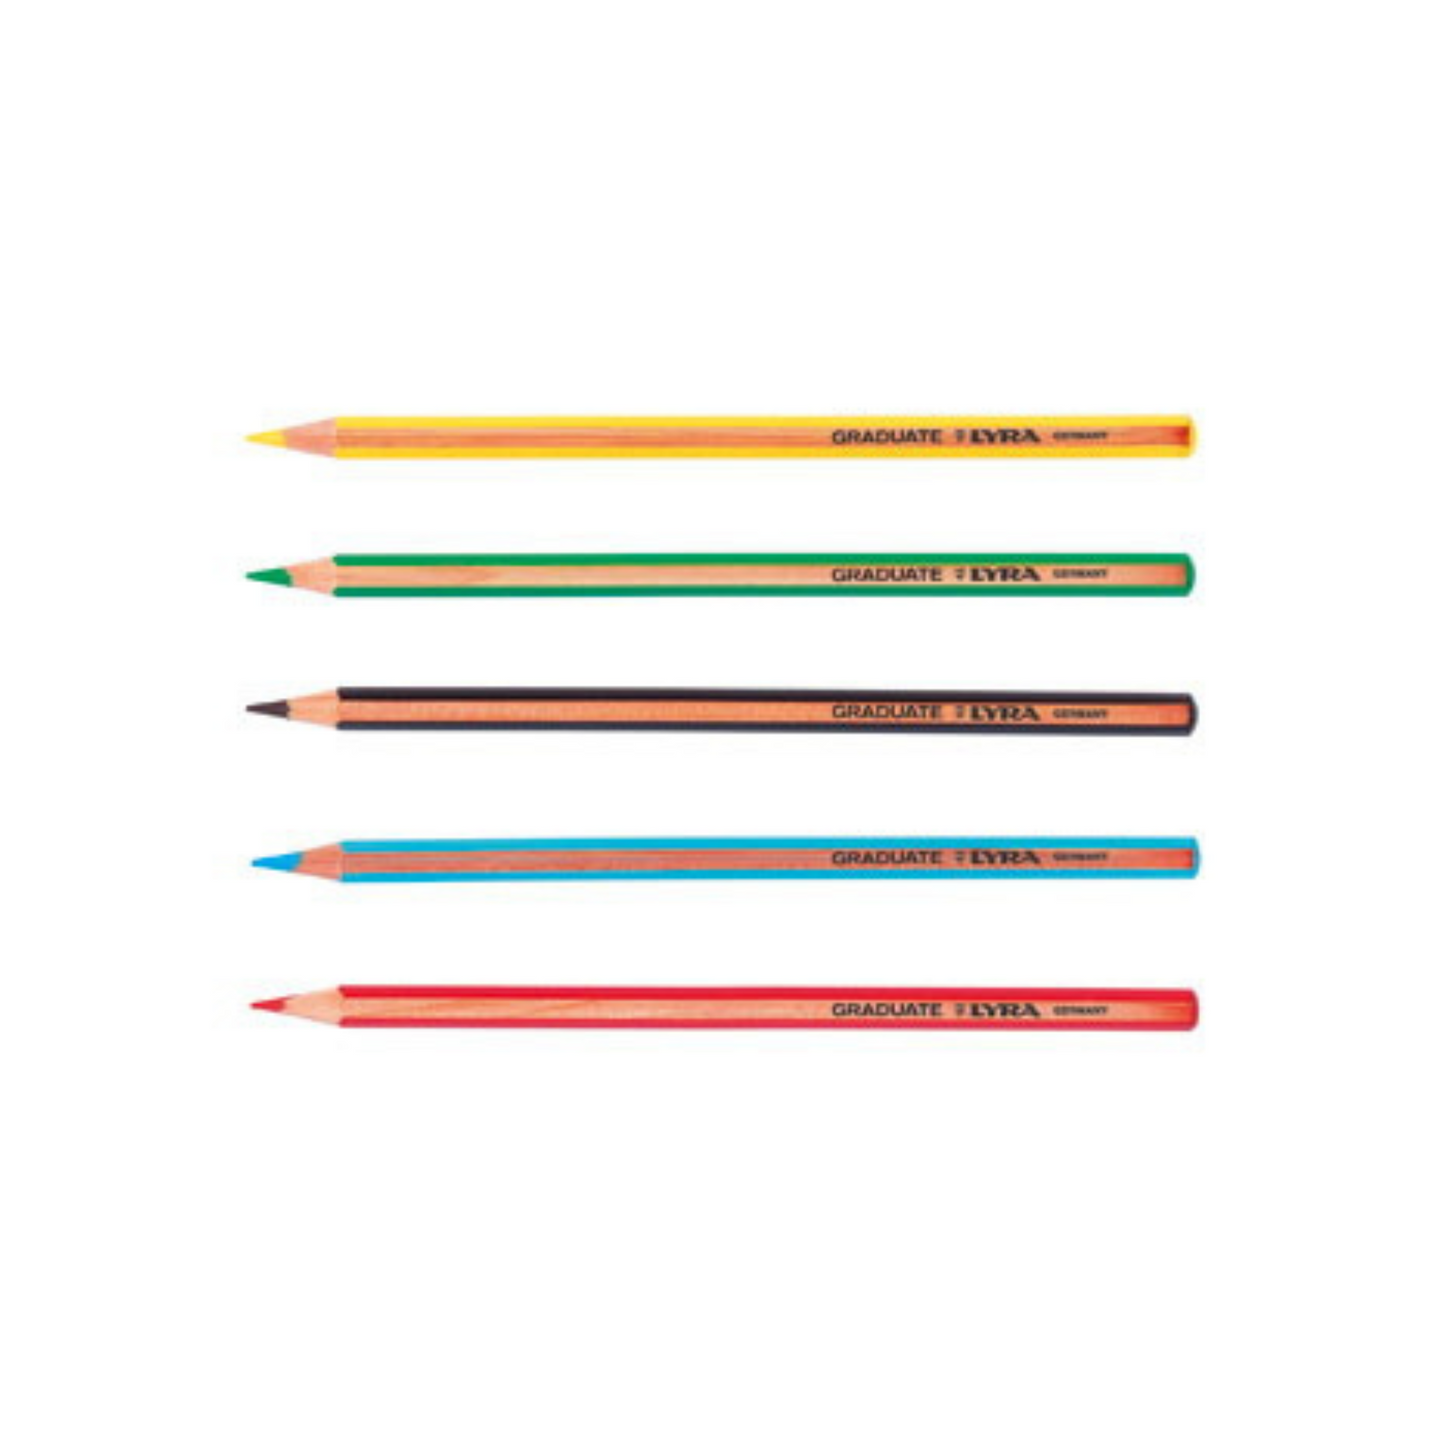 Lyra Graduate Colour Pencil Set (12 in metal tin)